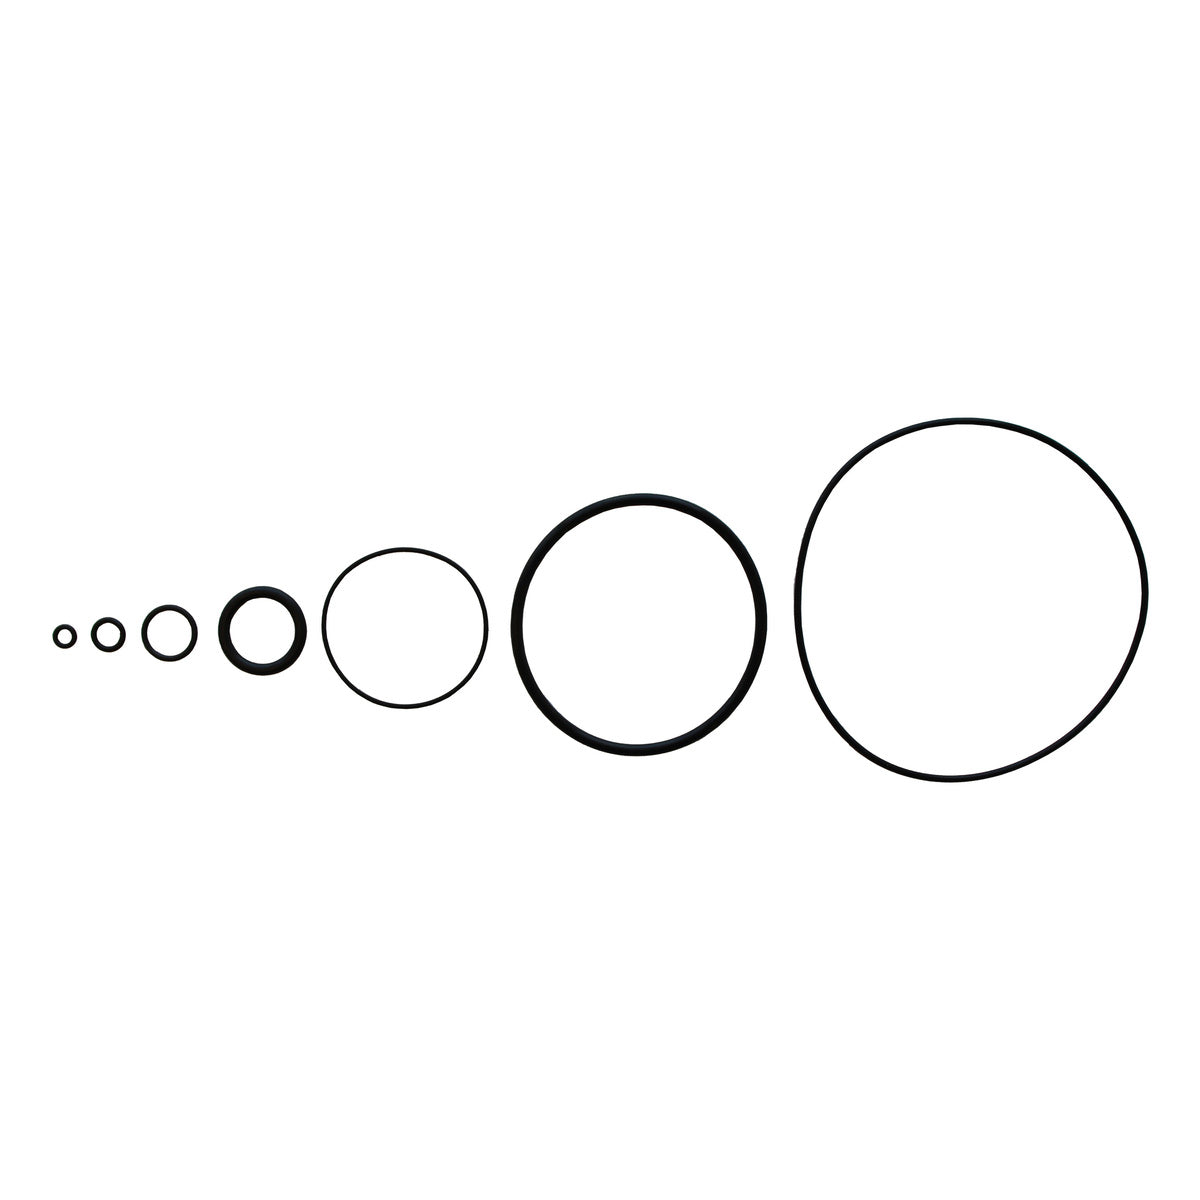 O-Ring, 21.82 x 3.53 mm - Viton, 82008